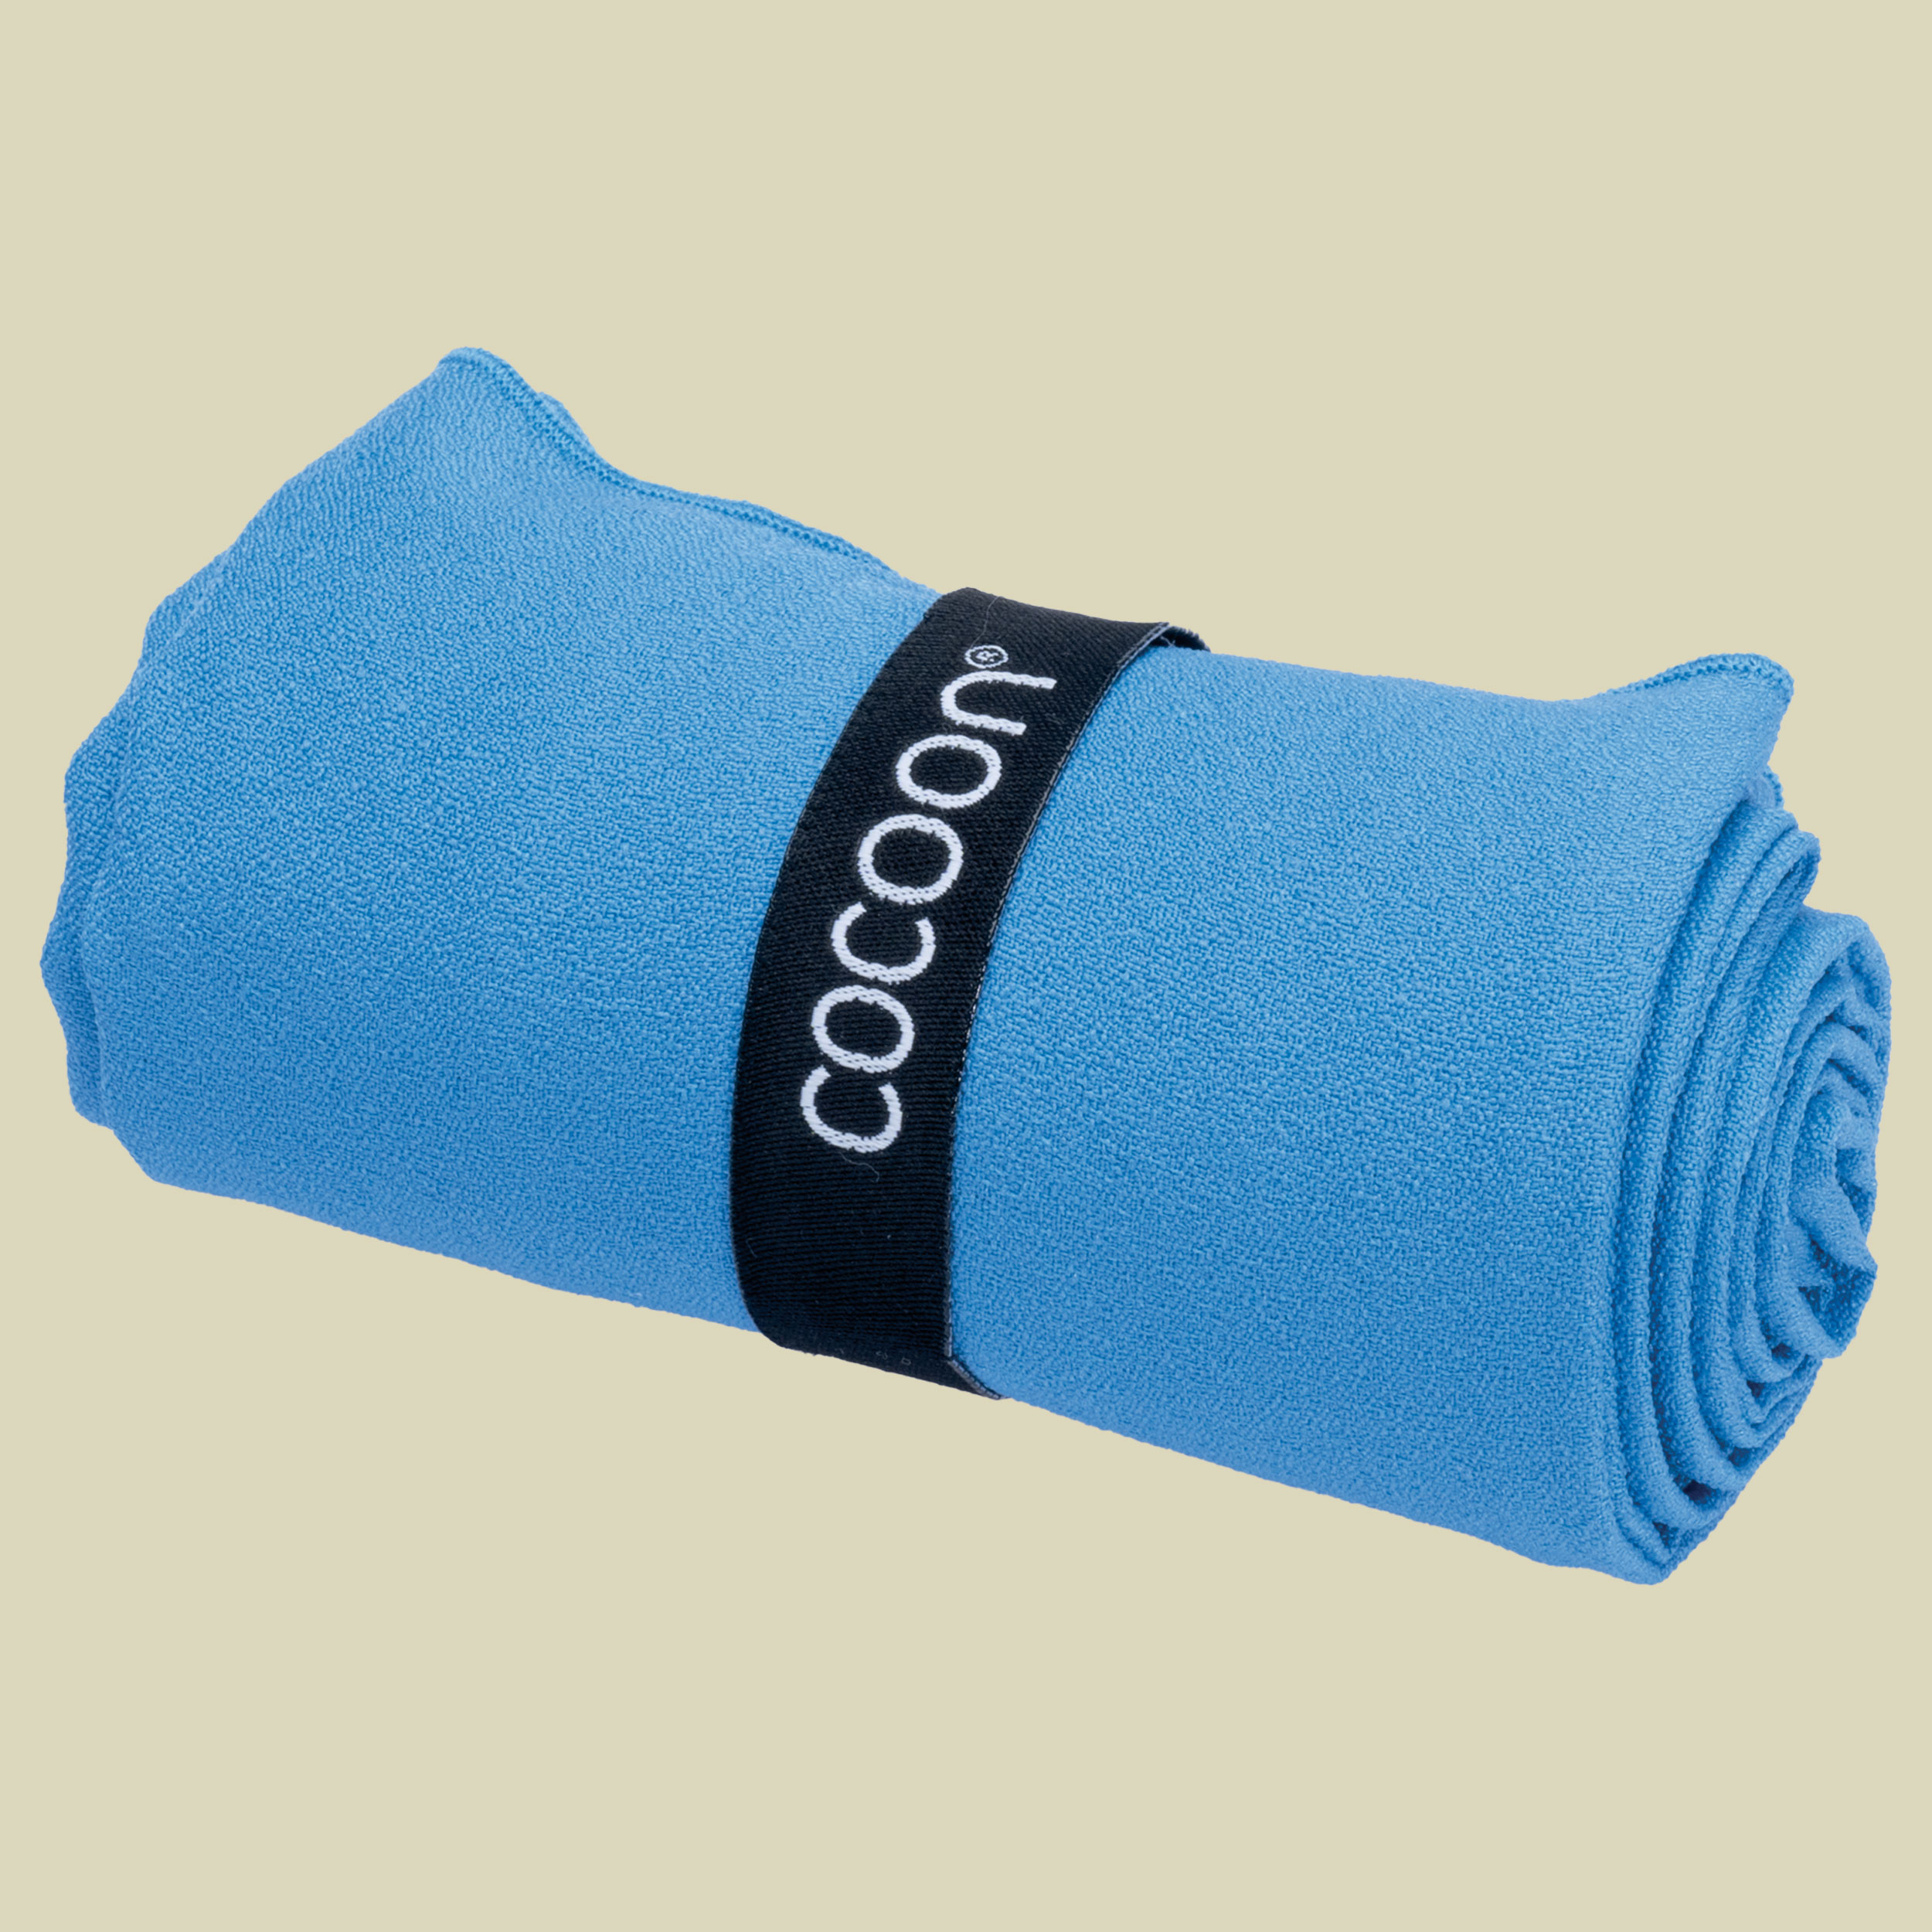 Microfiber Towel Hyperlight L blau - lagoon blue